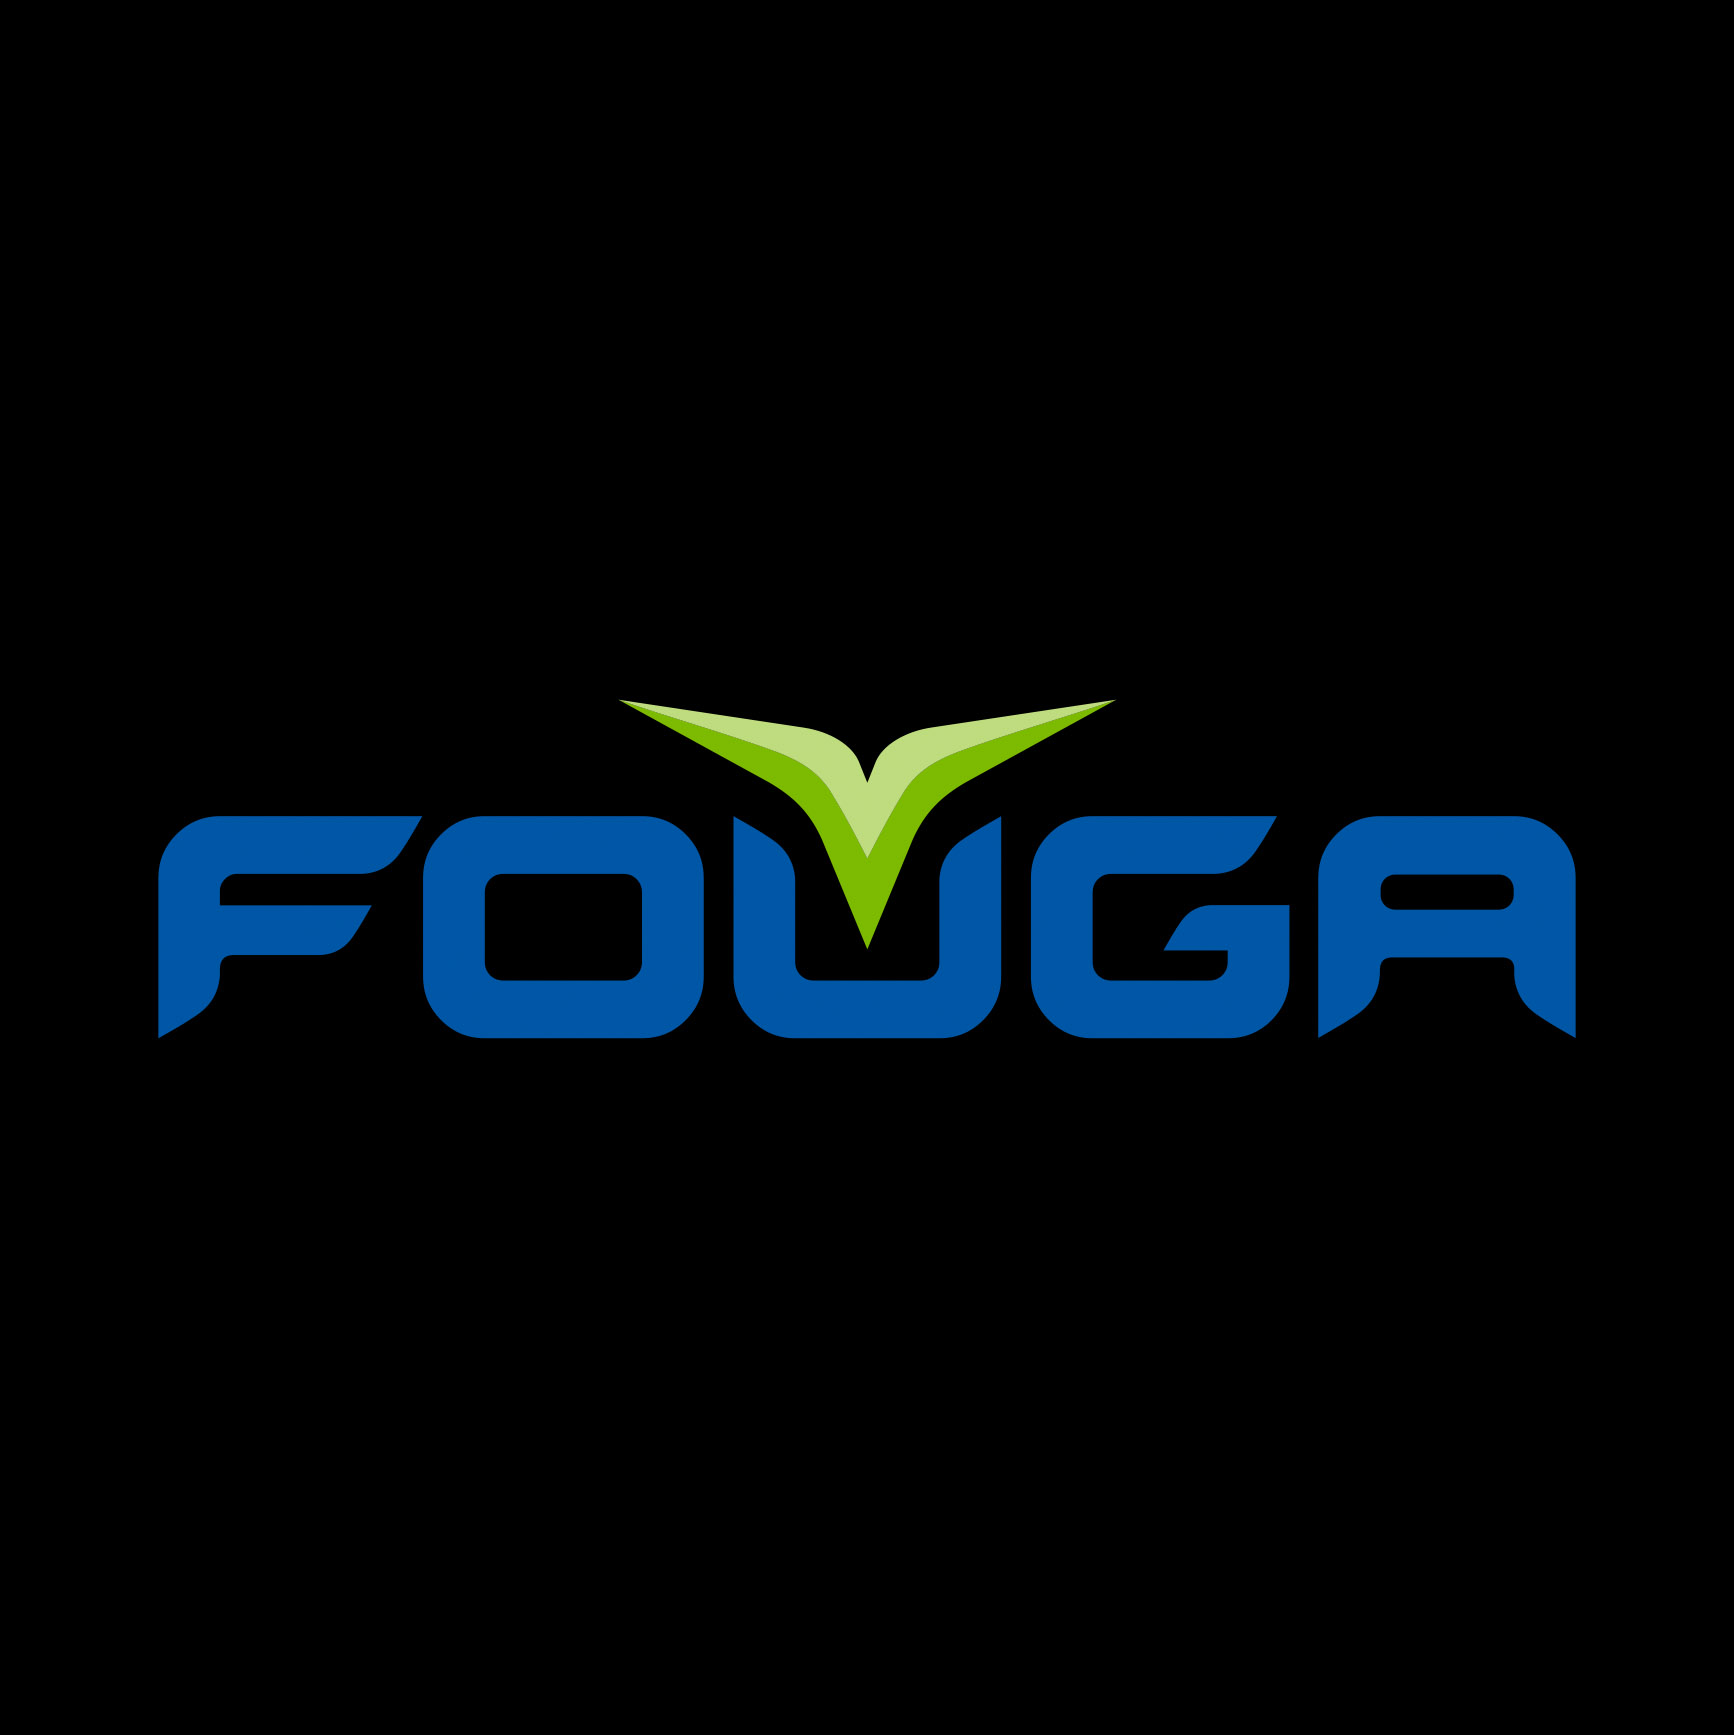 Logo, Fouga It, made by Therwiz Design